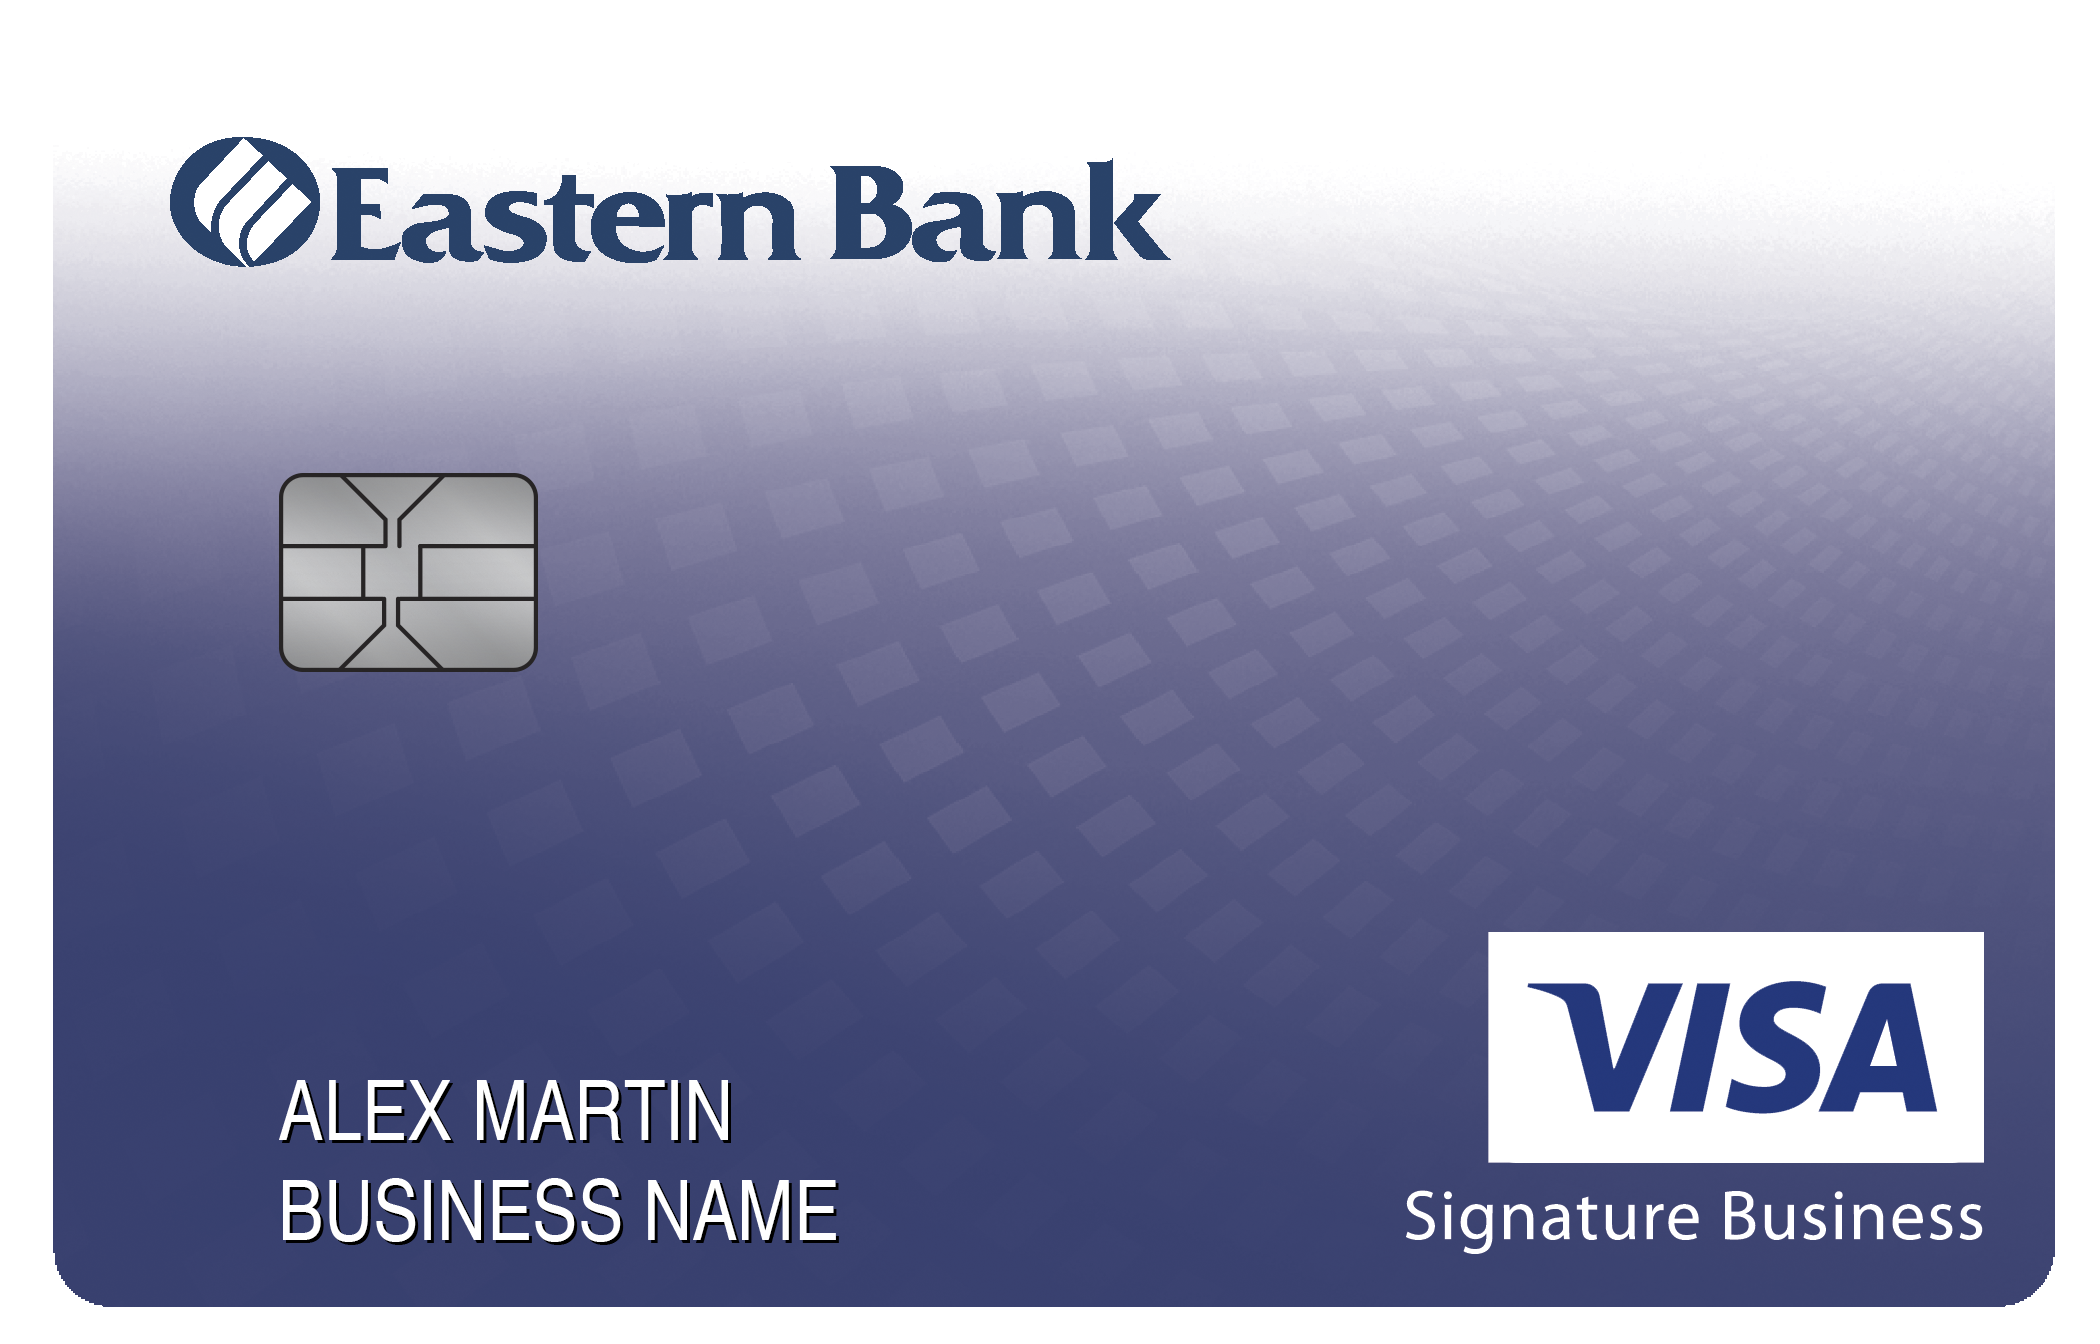 Eastern Bank Smart Business Rewards Card